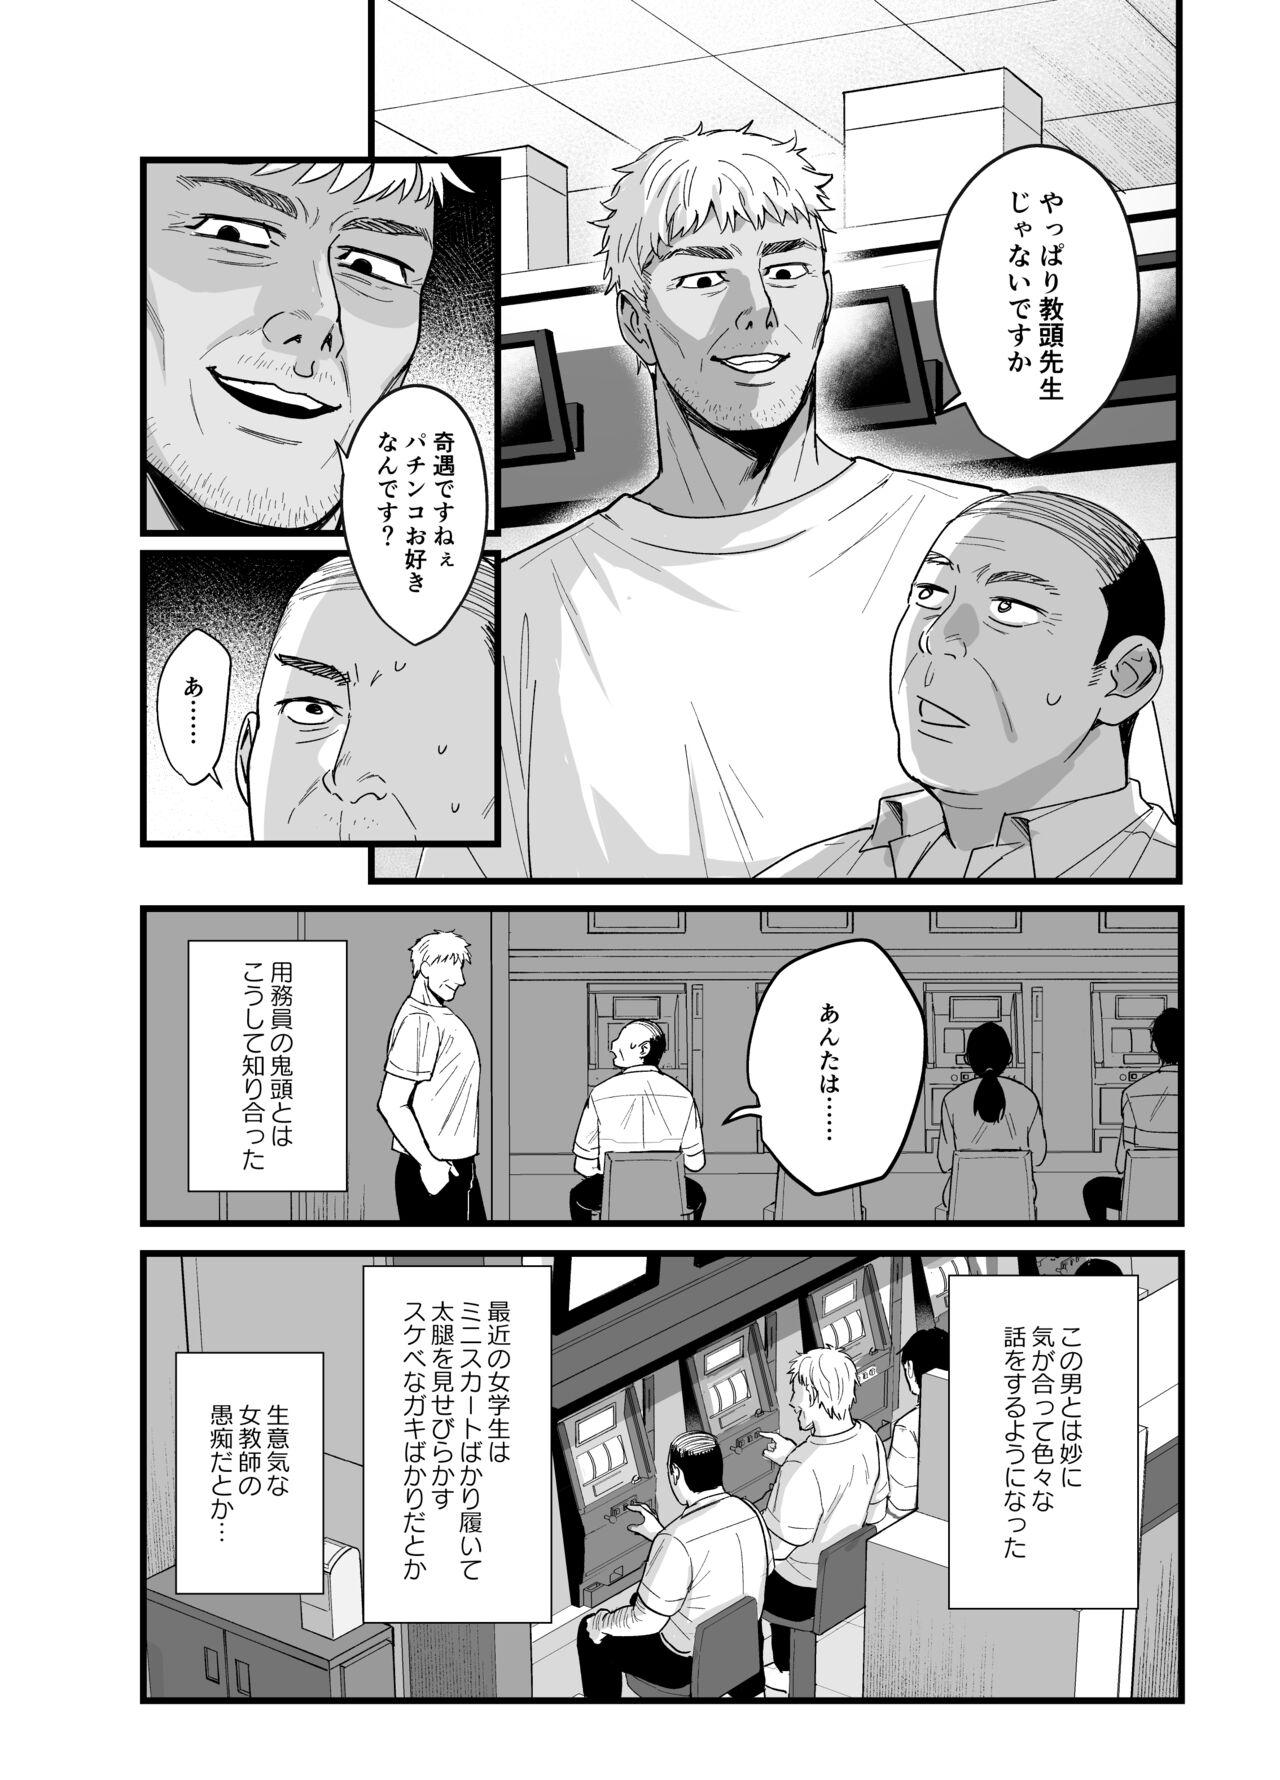 Monstercock Toshoshitsu no Kanojo 6 - Original Shavedpussy - Page 3